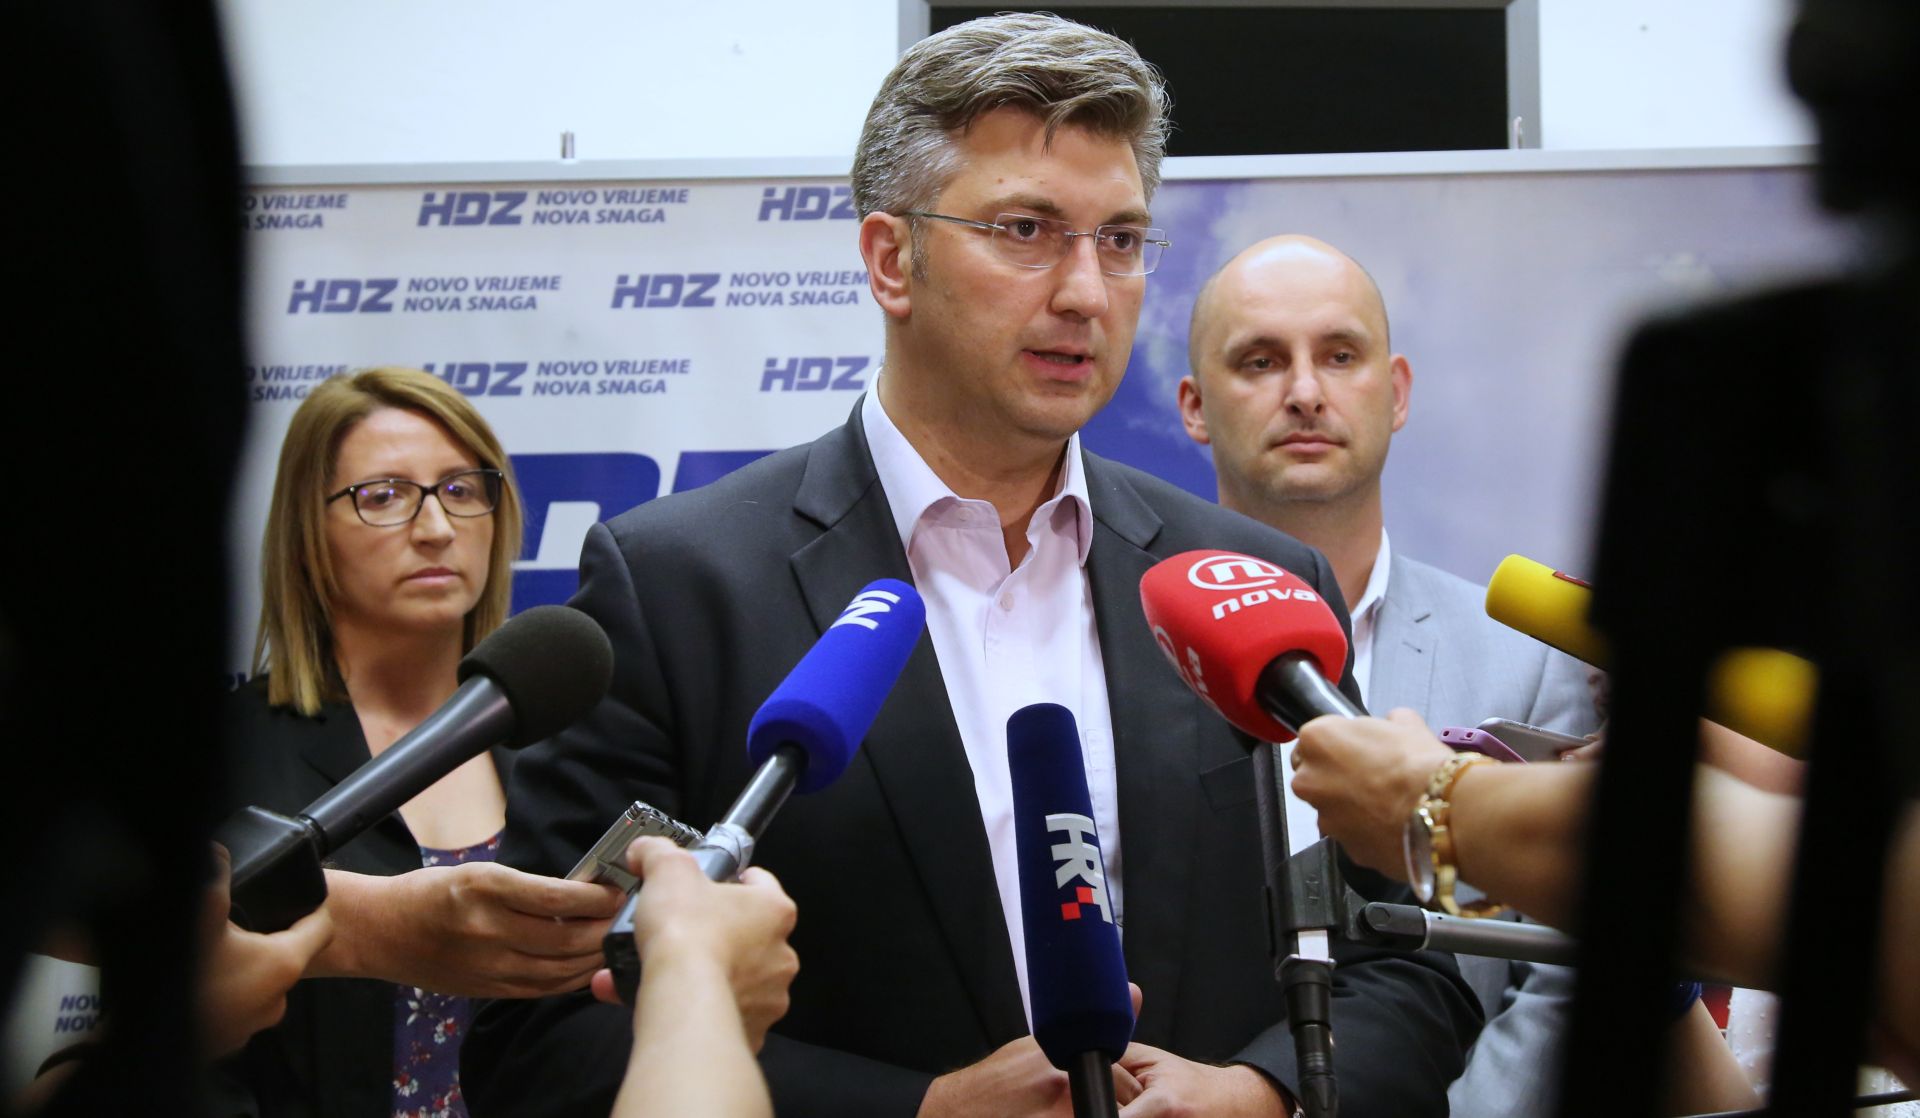 ANDREJ PLENKOVIĆ: Poljuljana vjerodostojnost HDZ-a, treba iskoristiti priliku za revitalizaciju